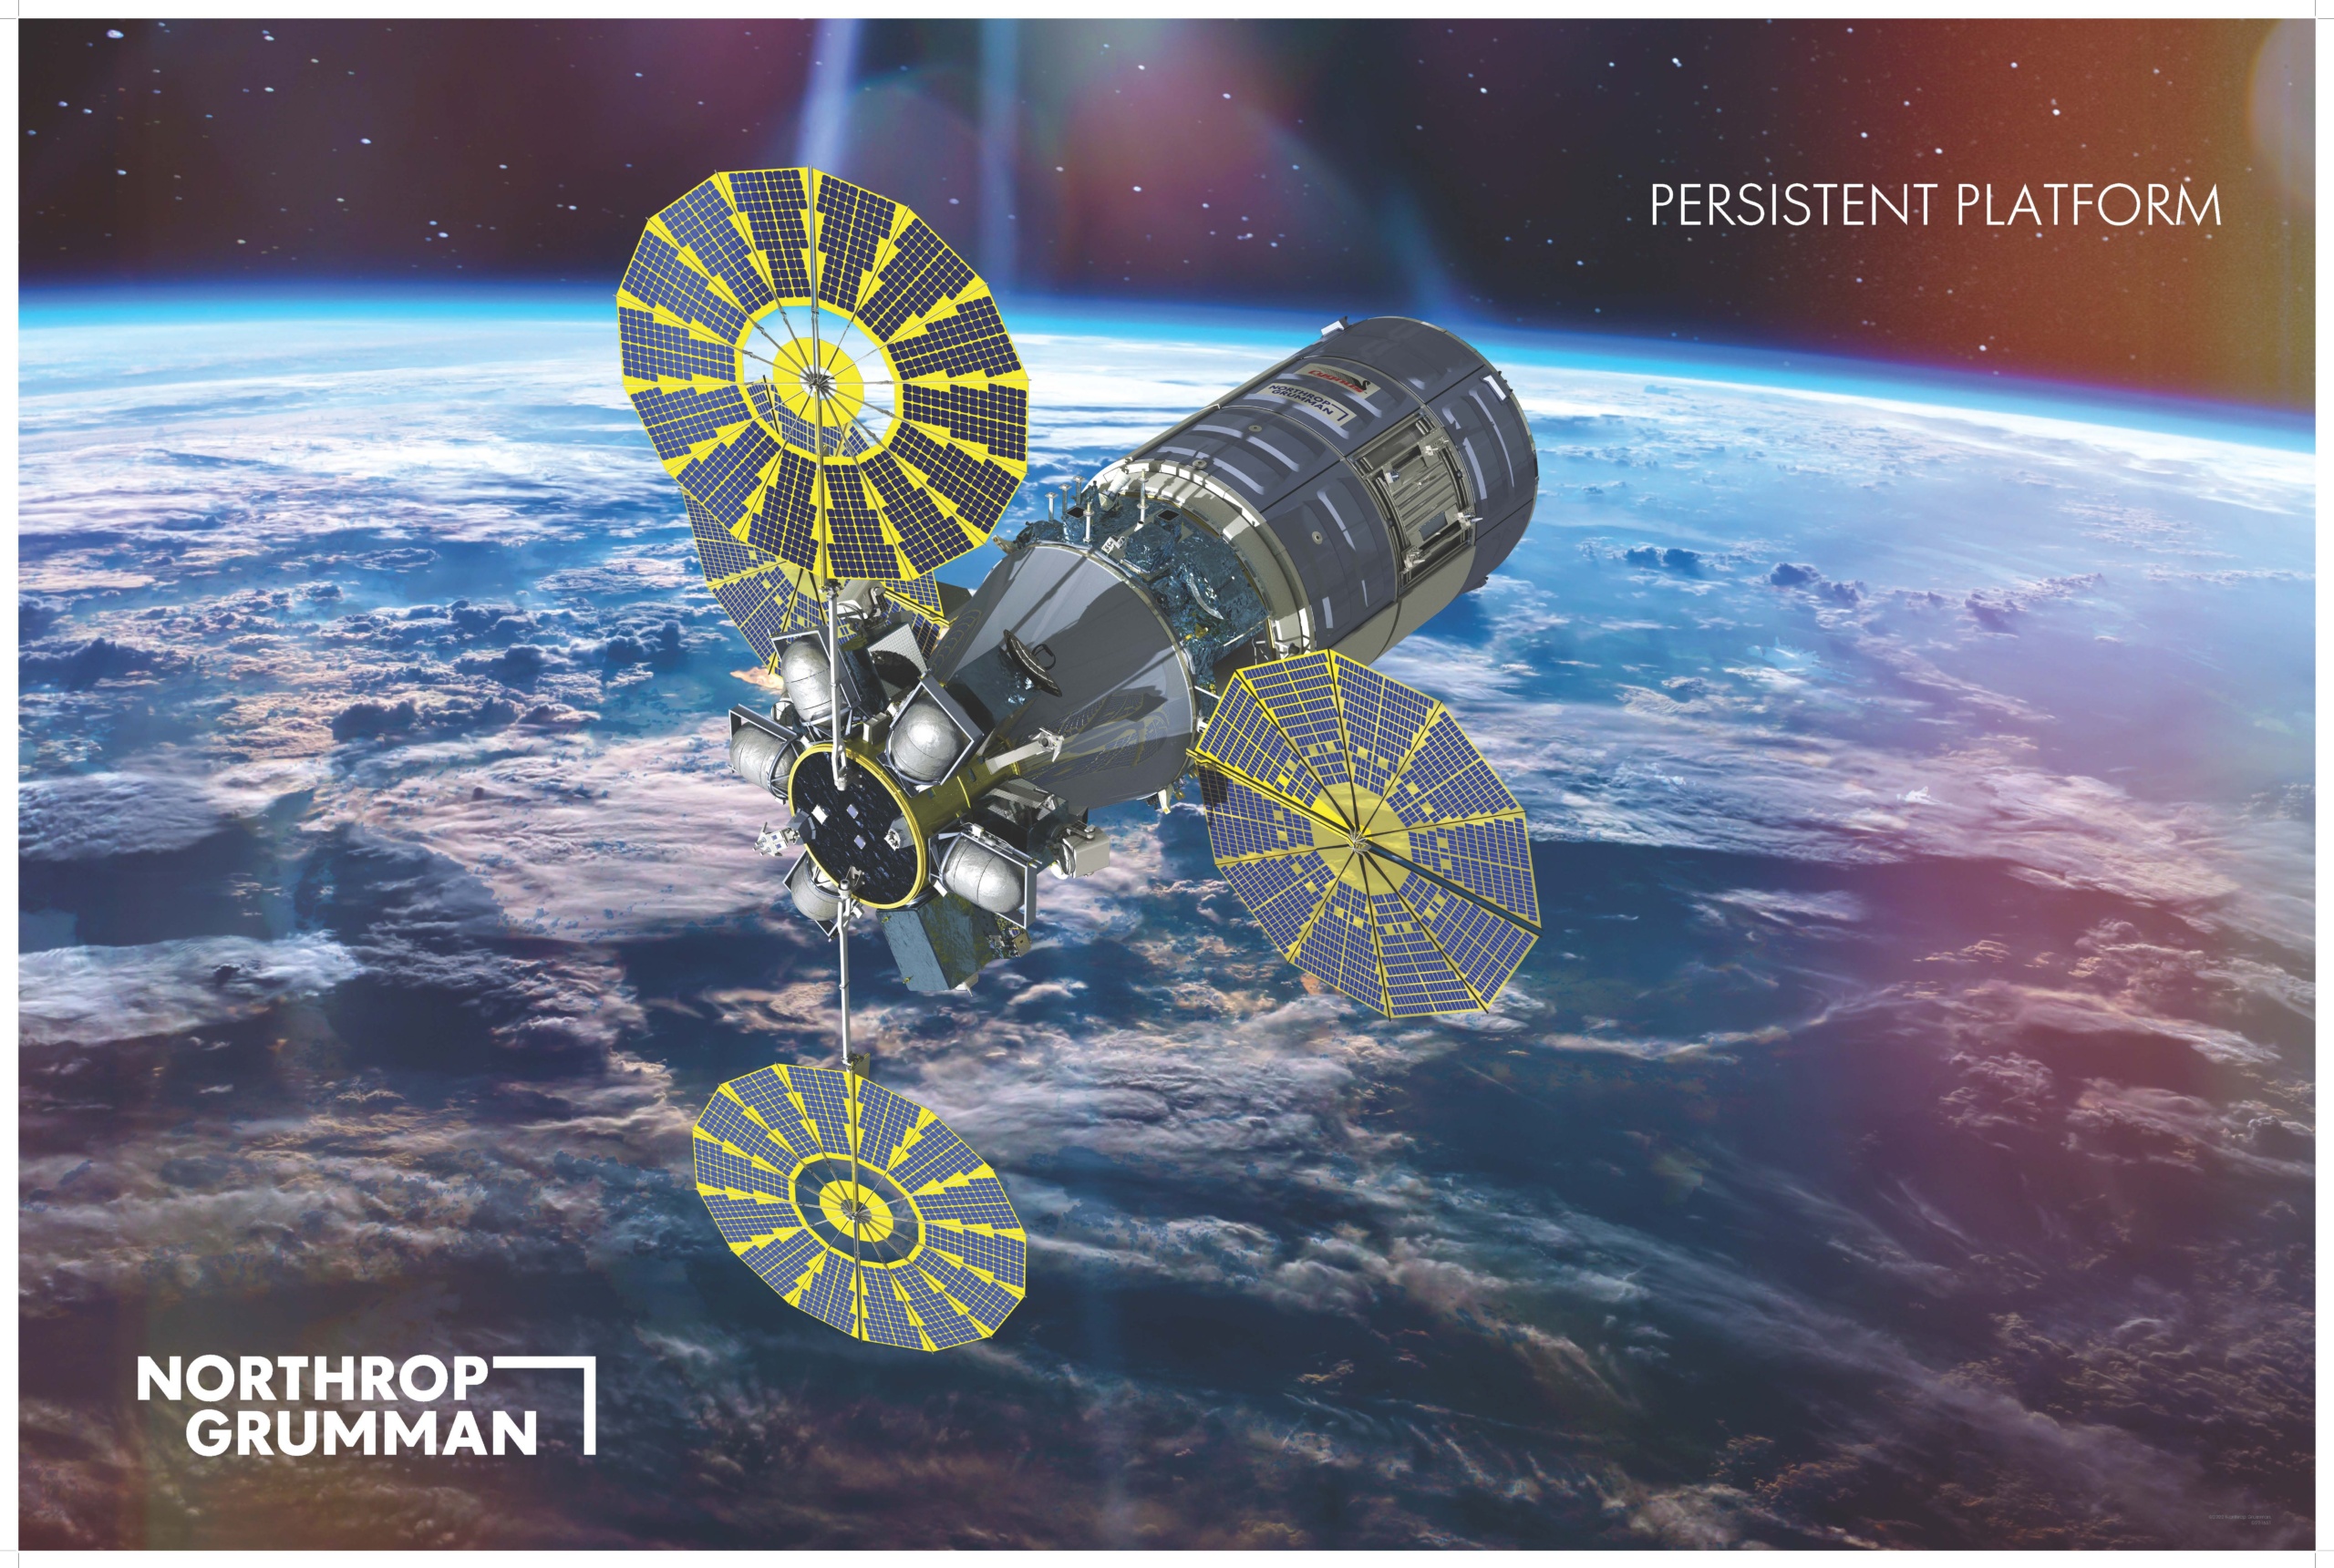 Ілюстрація концепту стійкої платформи Northrop Grumman на низькій навколоземній орбіті. 